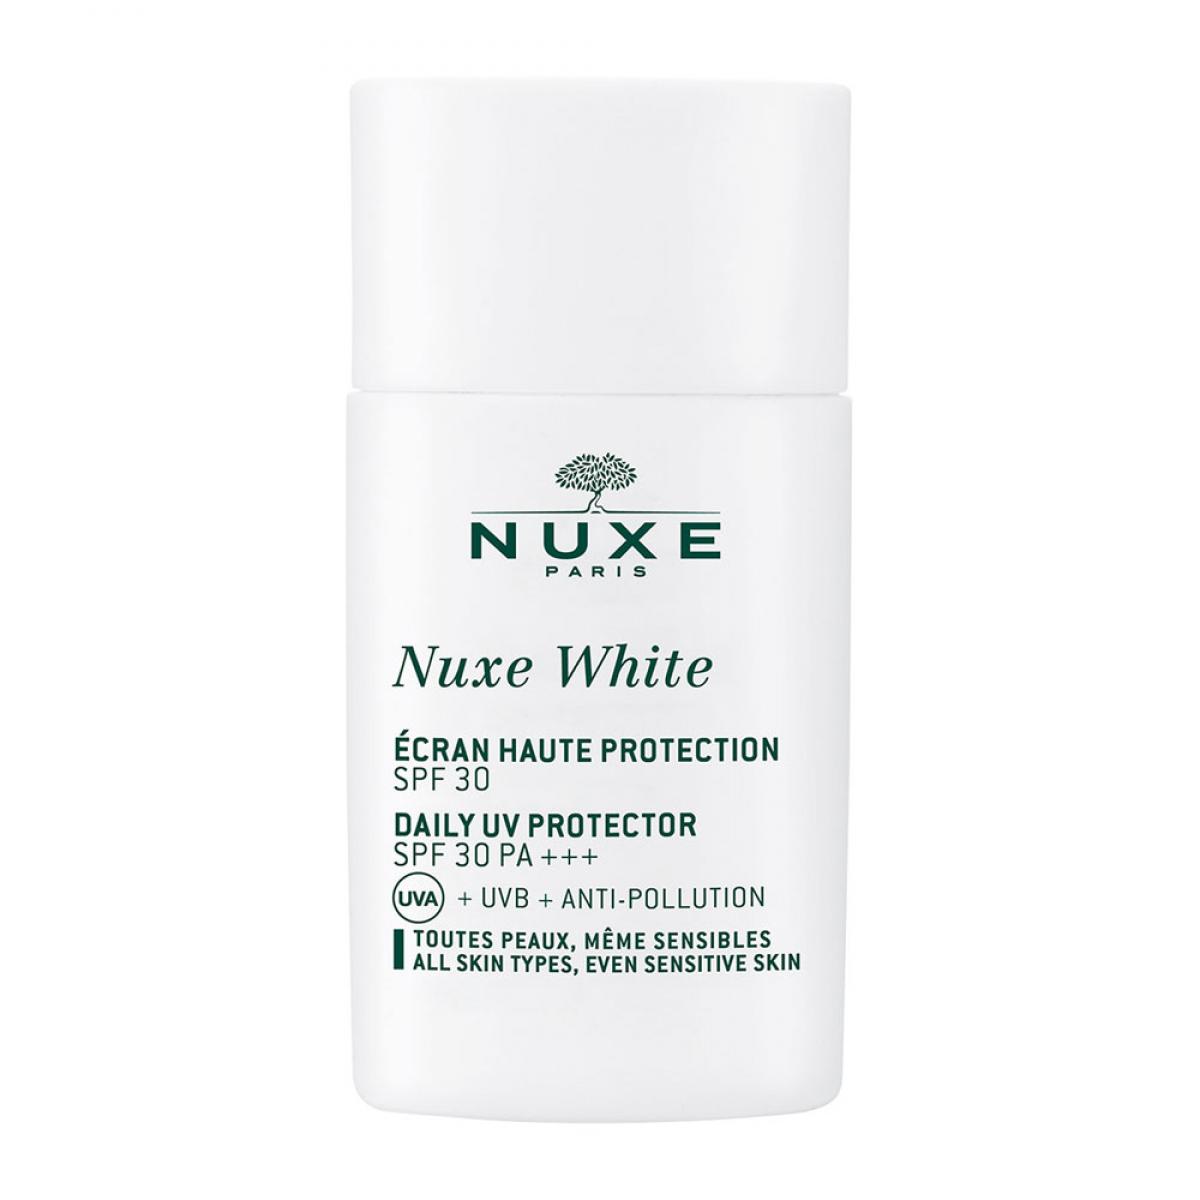 NUXE White Daily UV Protector SPF30 PA+++ - ضدآفتاب نوکس وایت spf 30